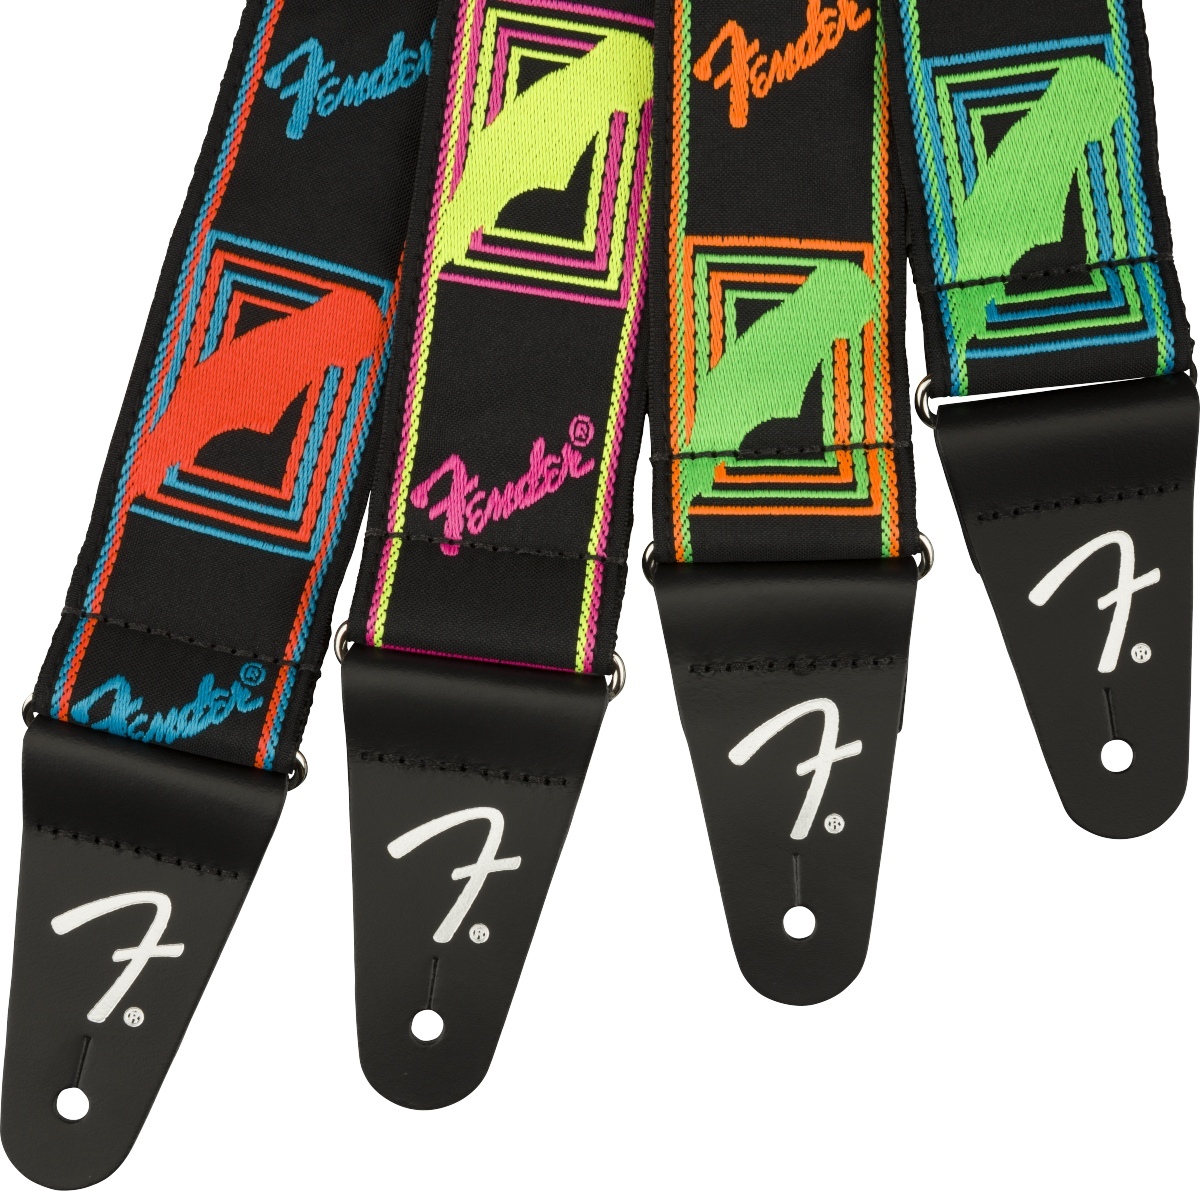 Fender ストラップ モノグラム ギター ベース フェンダー - 器材